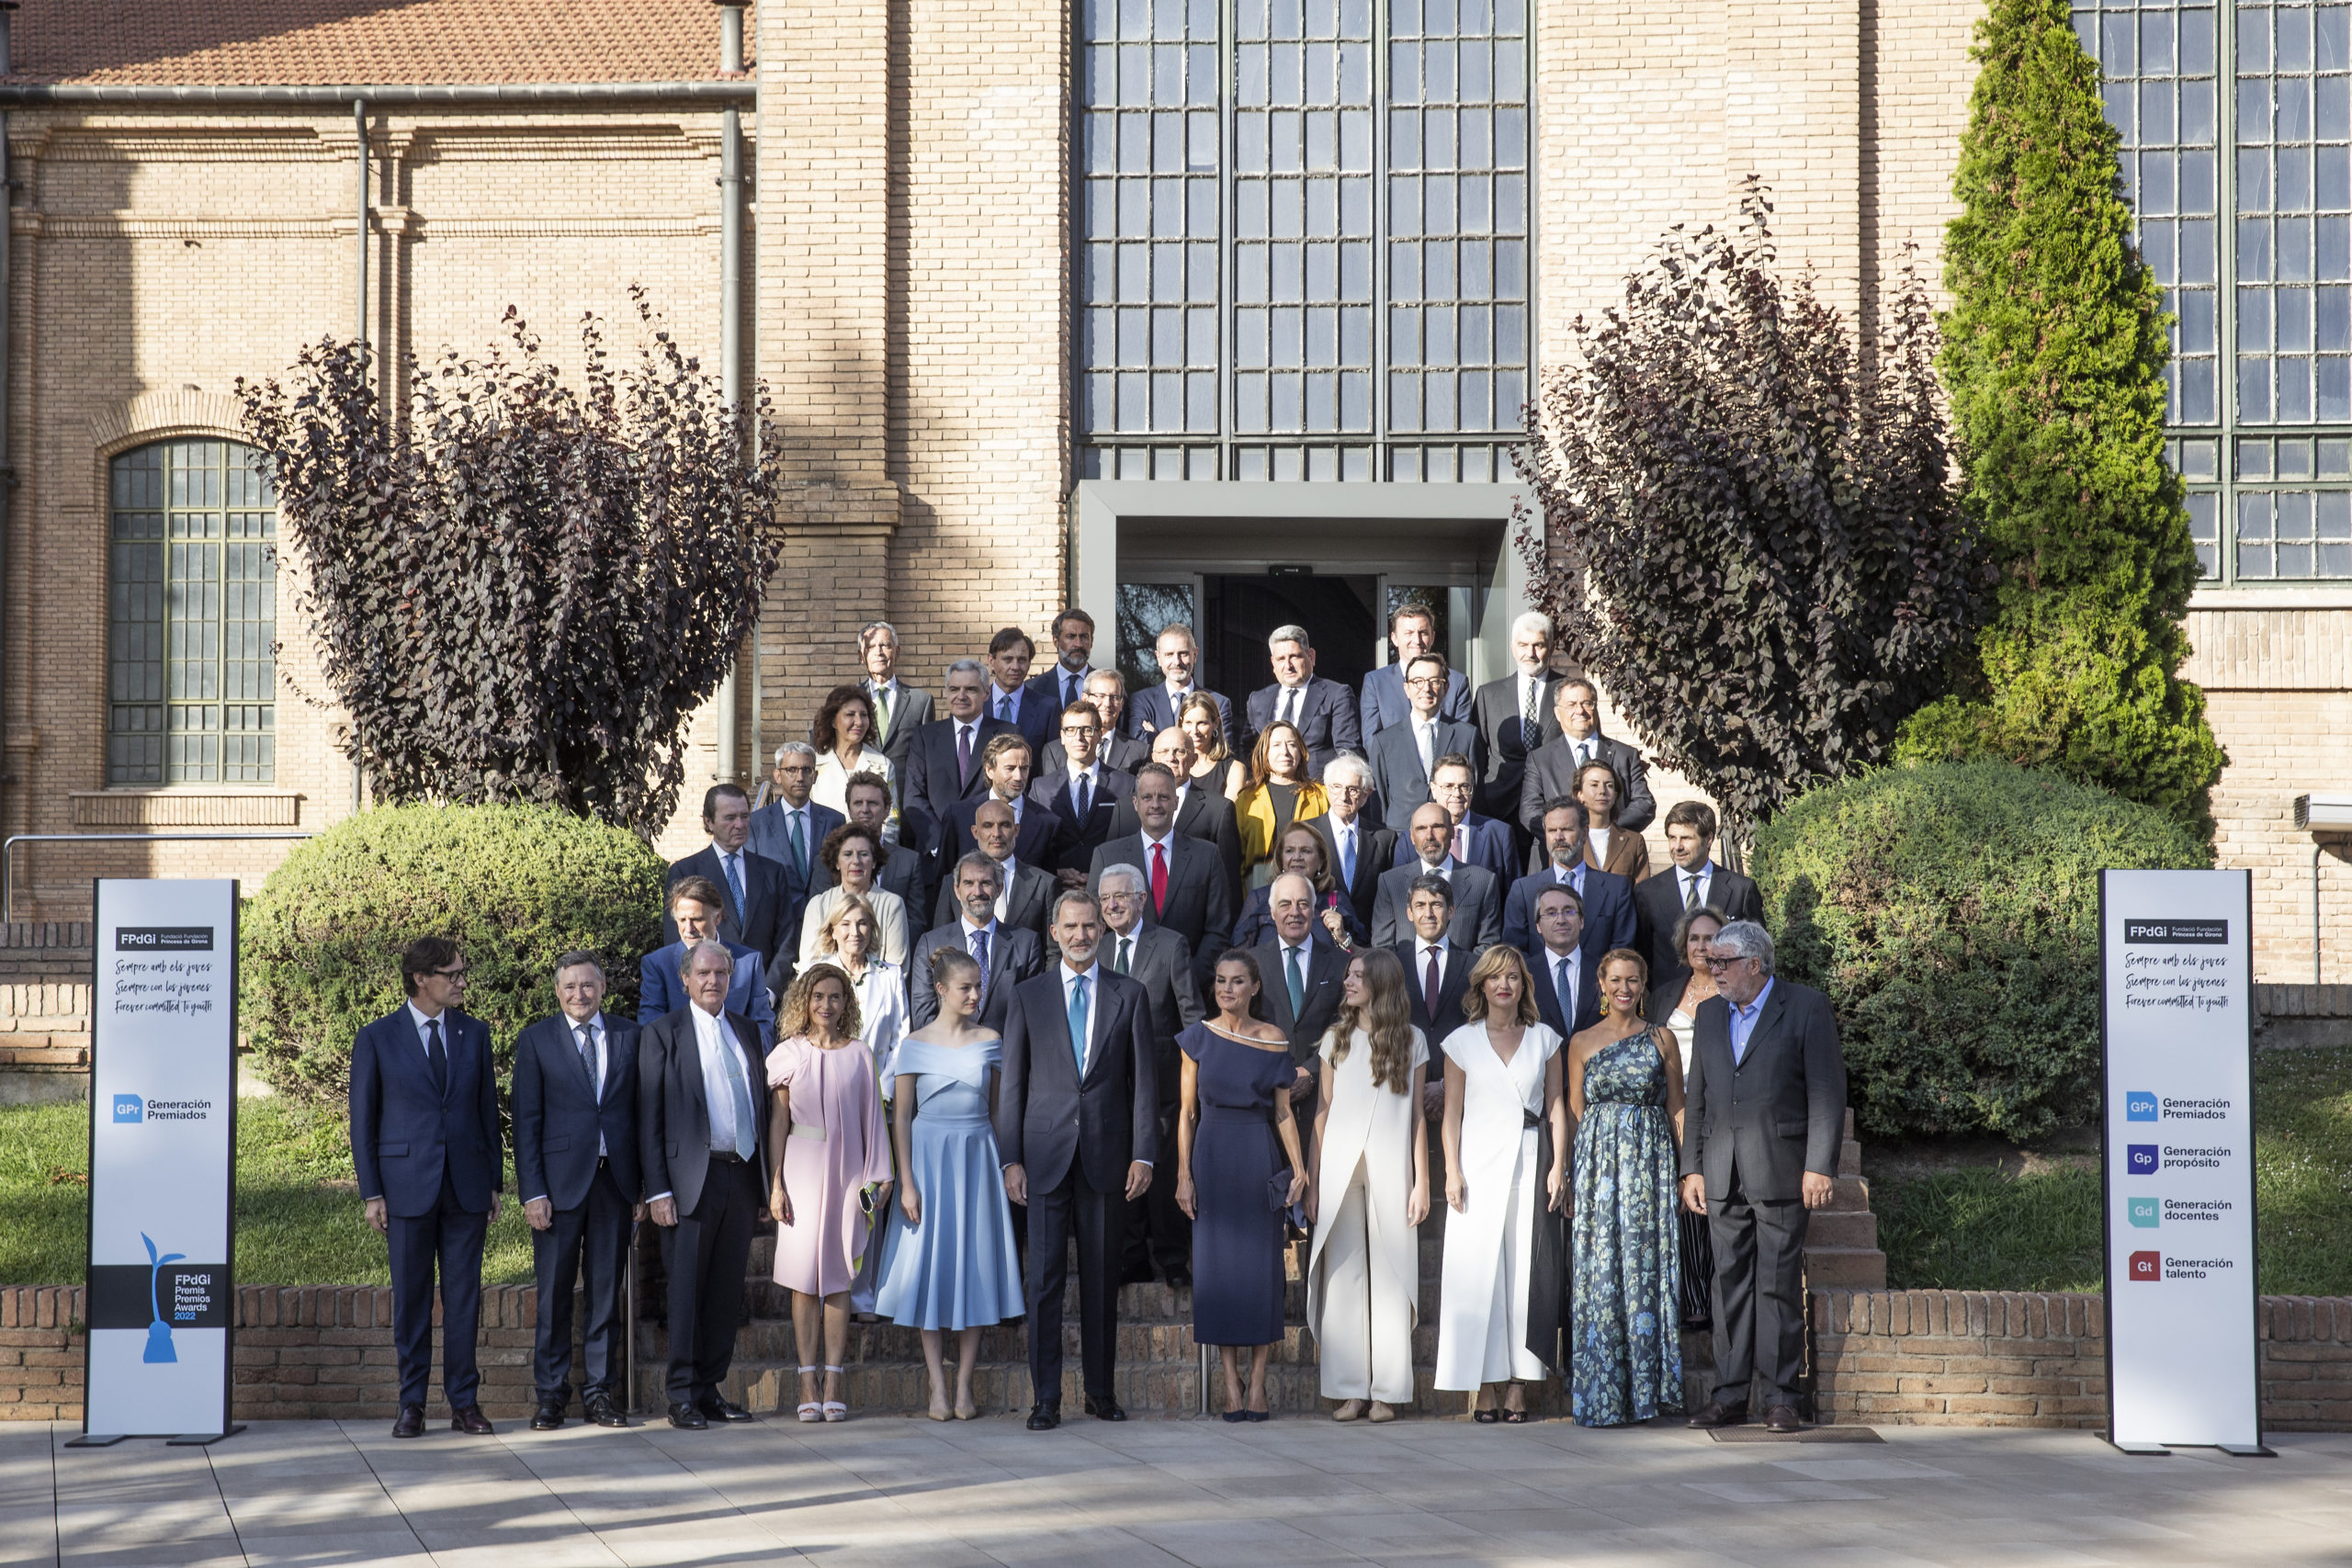 XXVII Reunión del Patronato de la Fundación Princesa de Girona